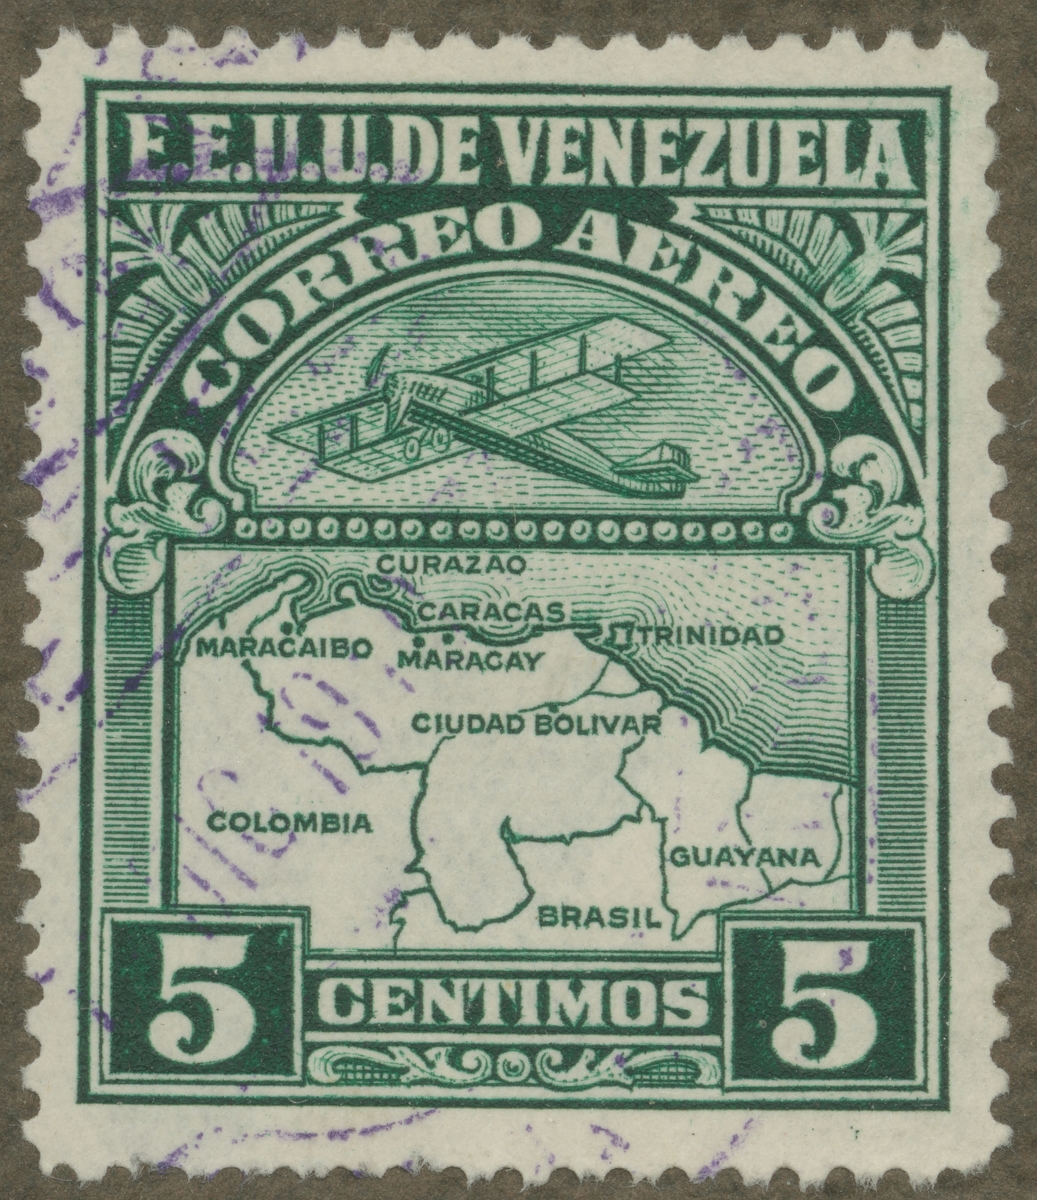 Frimärke ur Gösta Bodmans filatelistiska motivsamling, påbörjad 1950.
Frimärke från Venezuela, 1930. Motiv av karta över Venezuela och enmotorigt biplan.